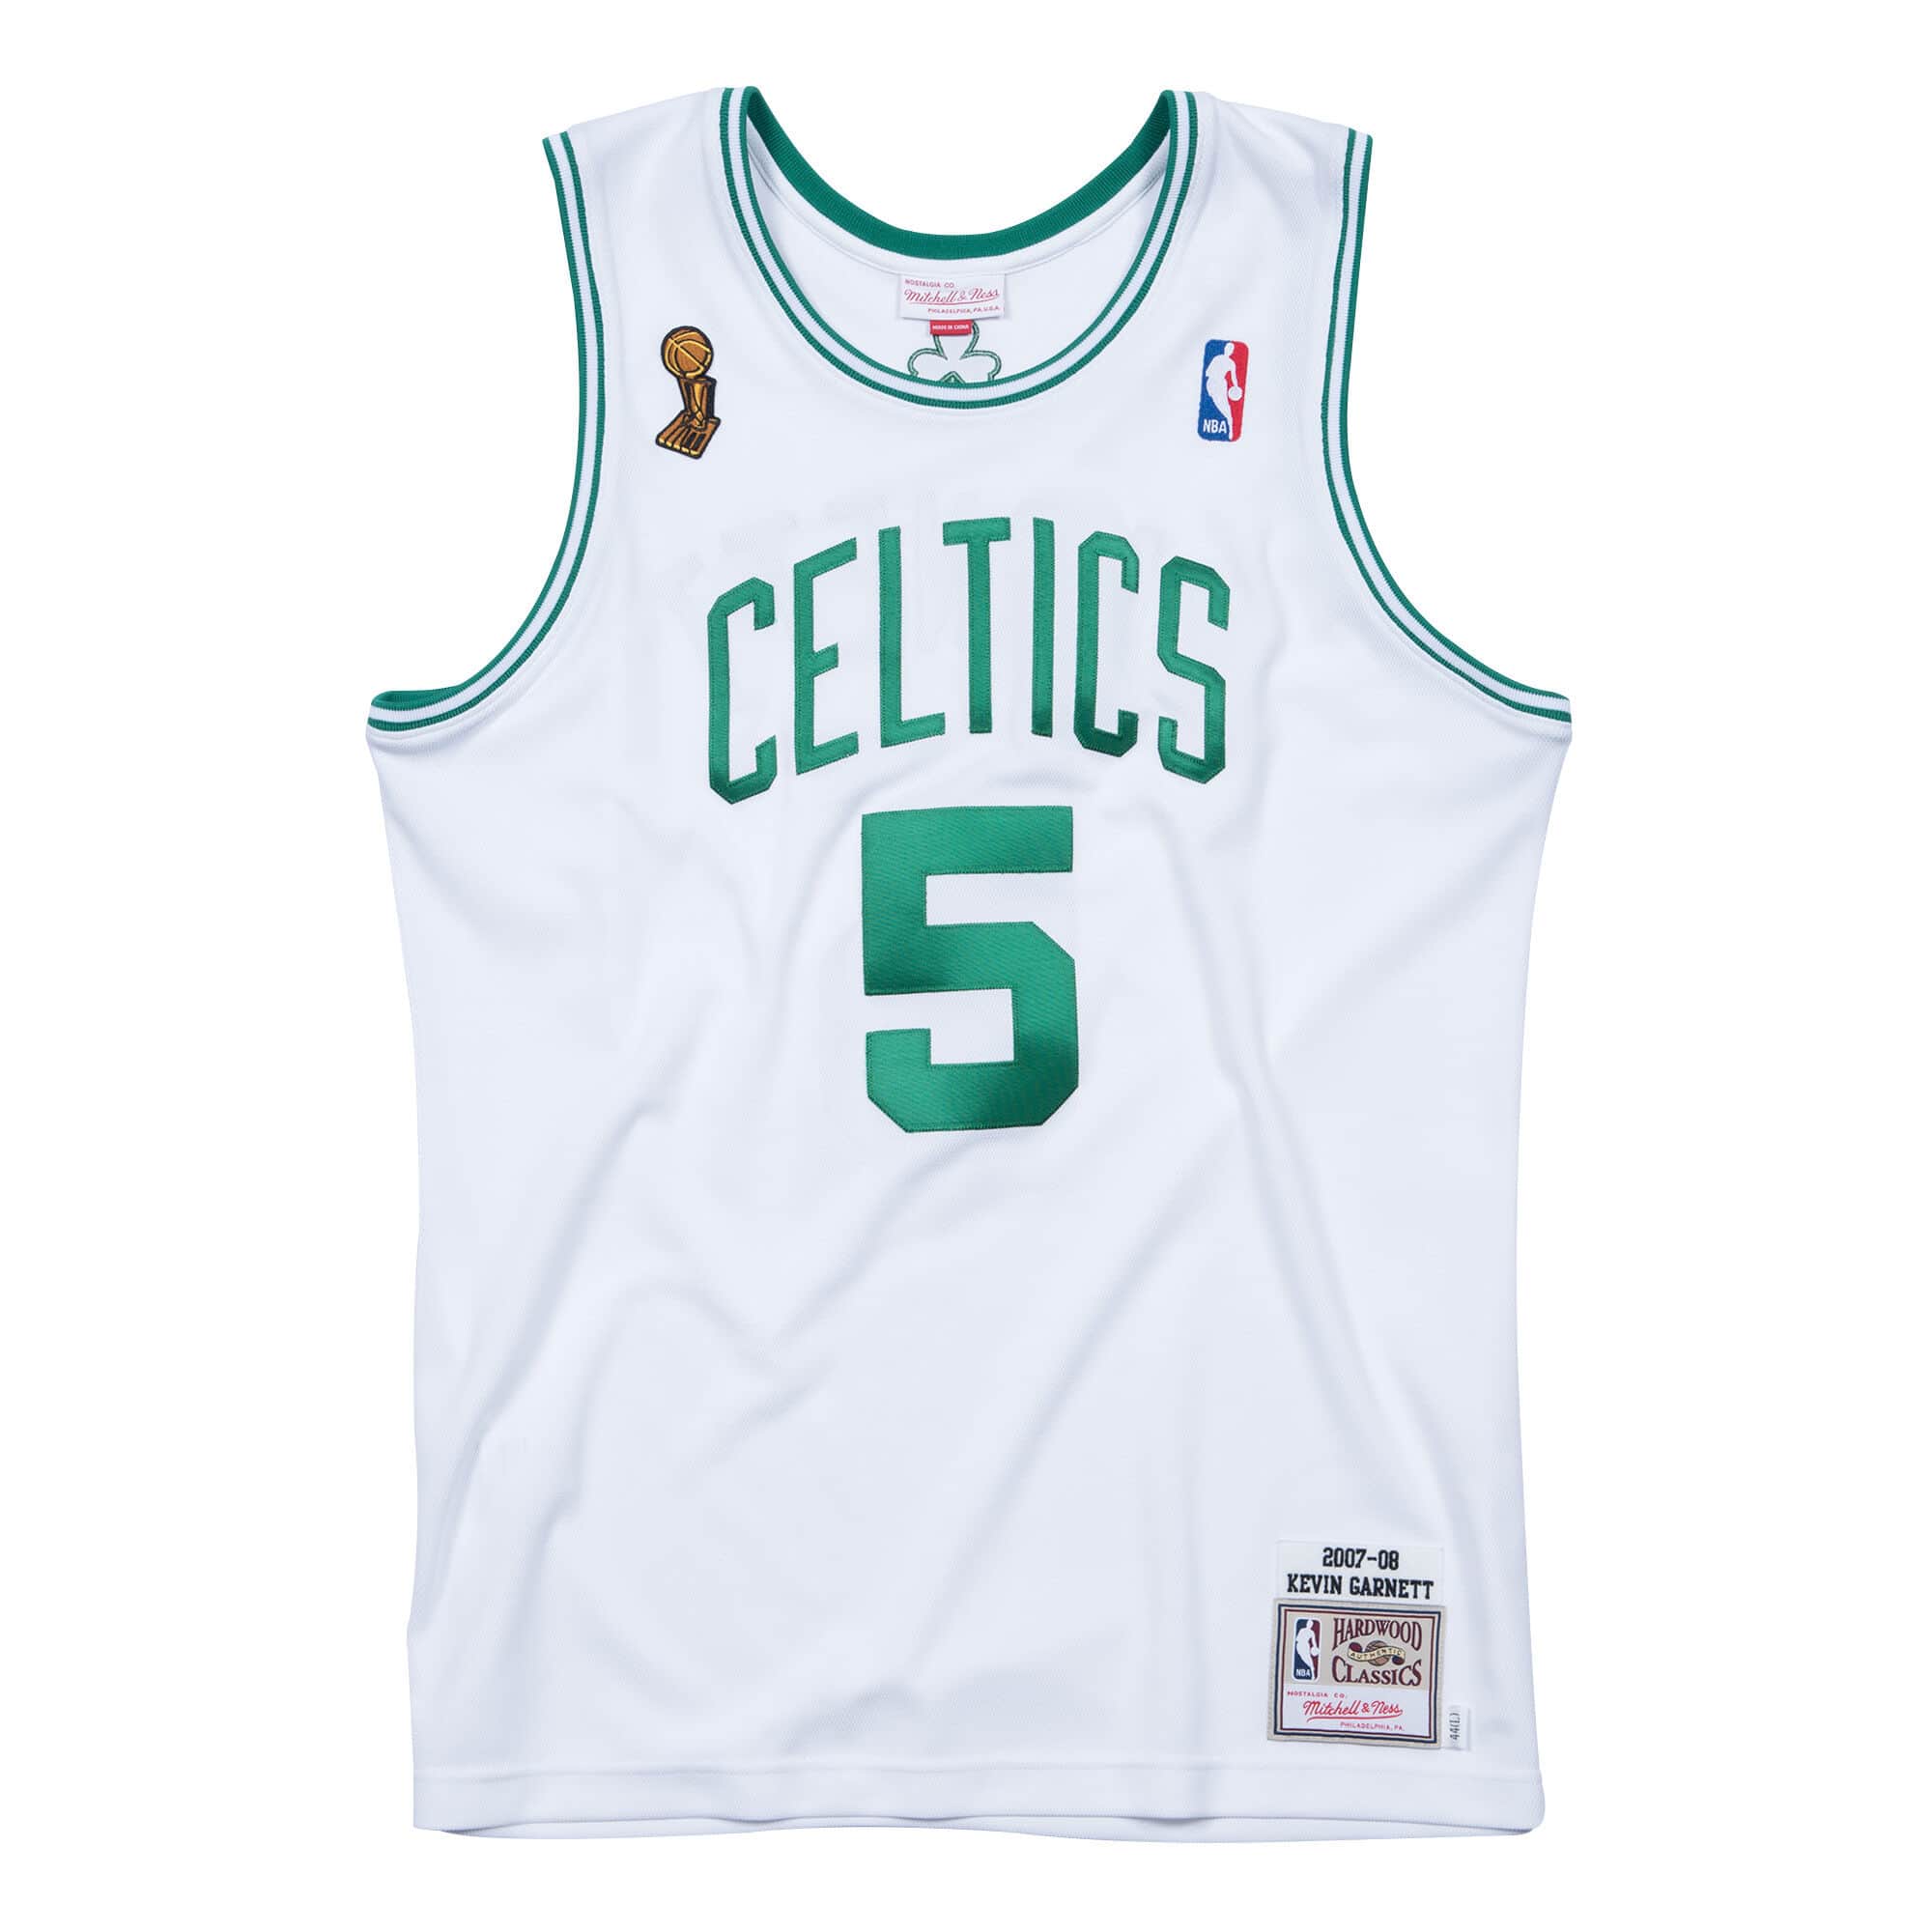 Kevin Garnett 2007-08 Boston Celtics Finals Jersey